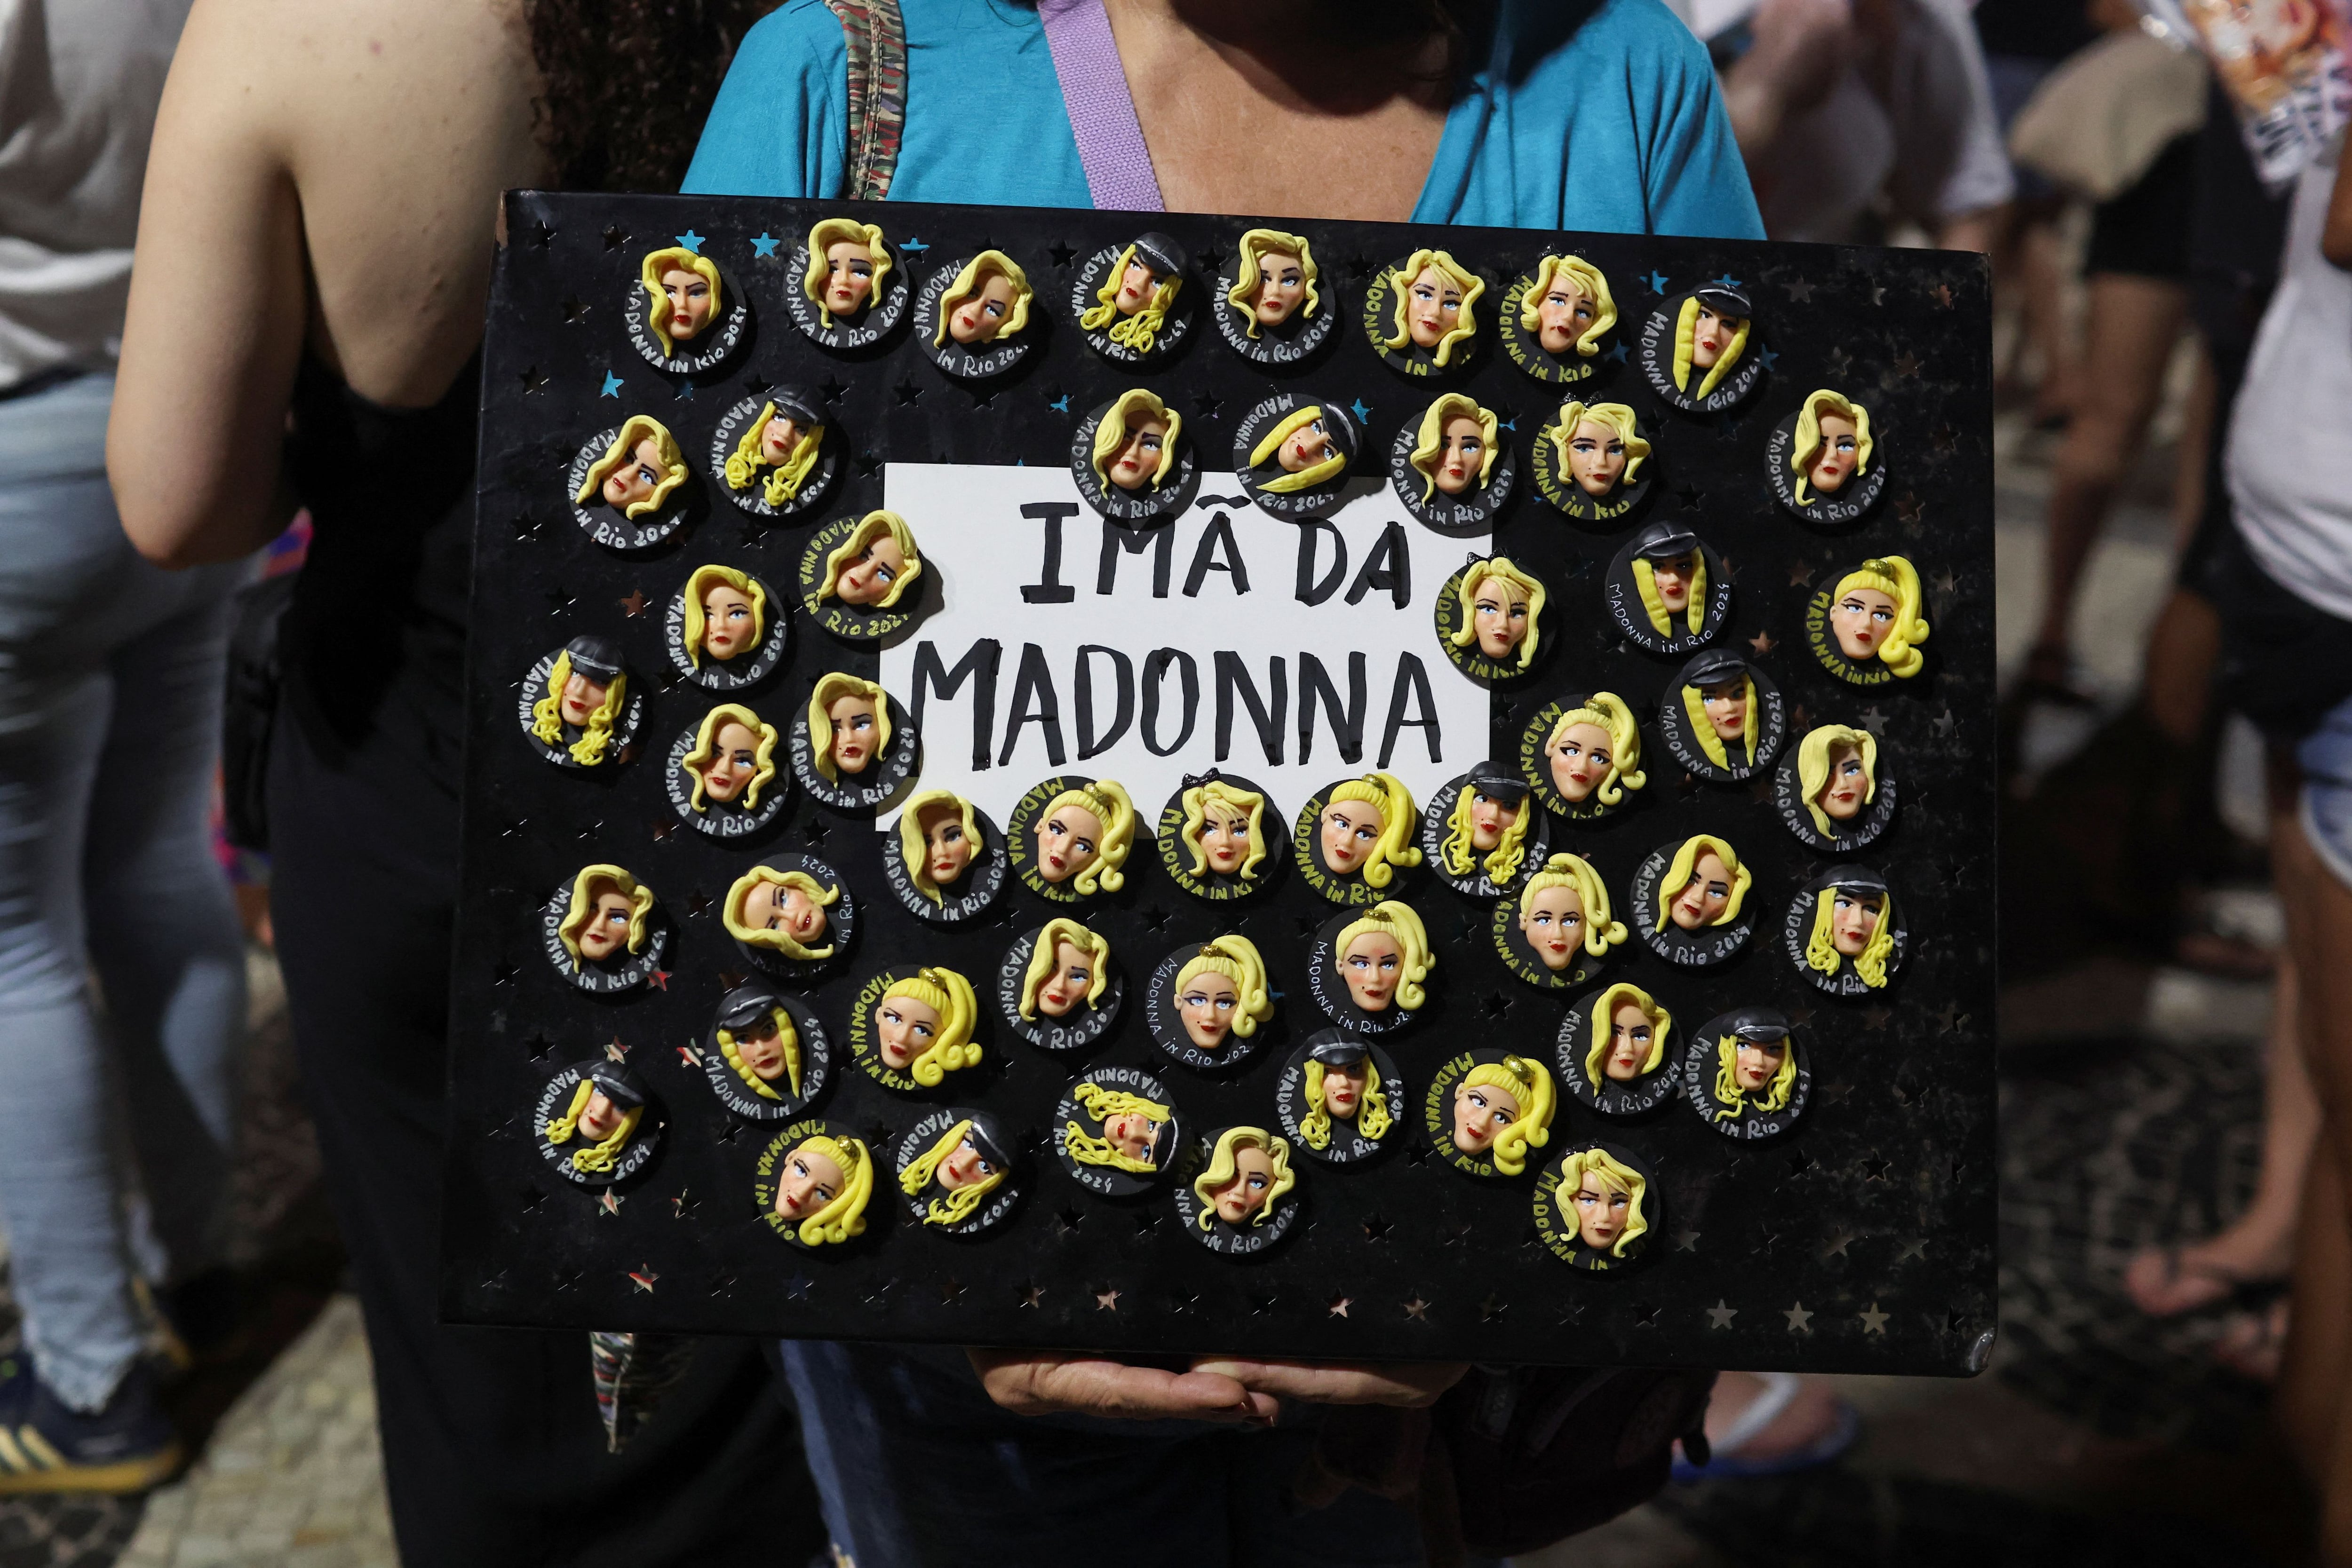 Souvenirs con la cara de Madonna en miniatura (Foto/REUTERS/Pilar Olivares)